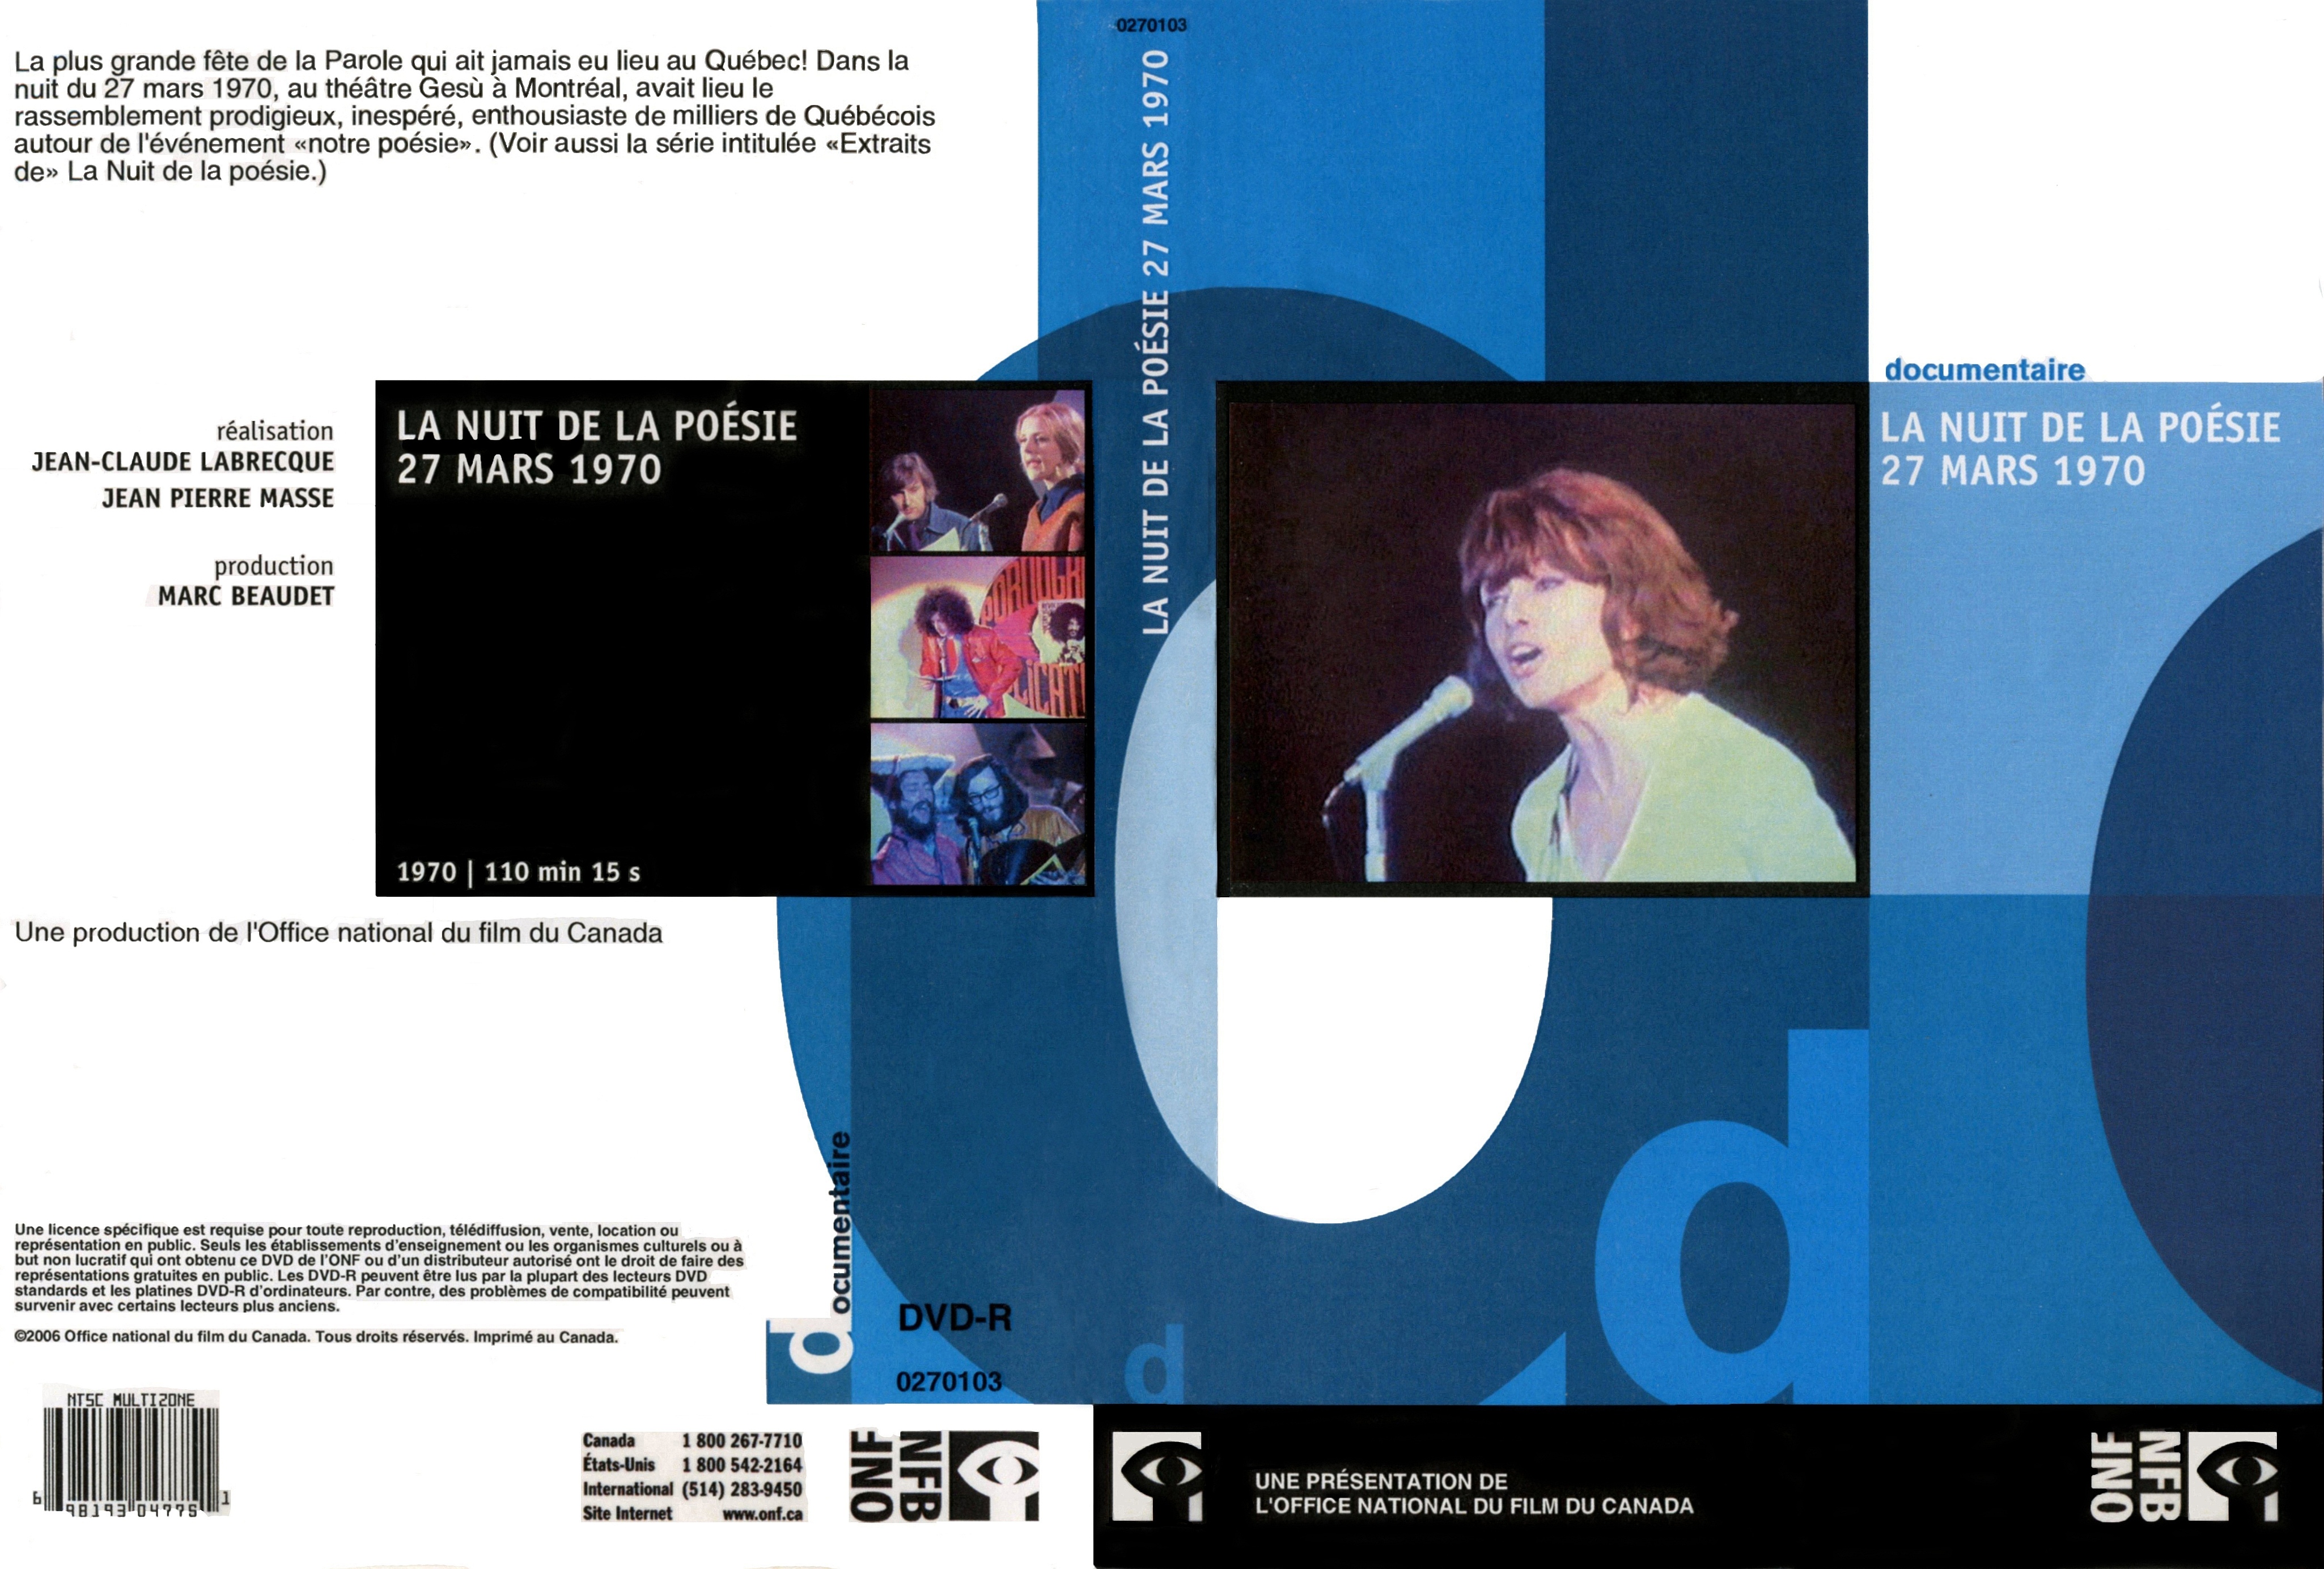 Jaquette DVD La nuit de la poesie 27 mars 1970